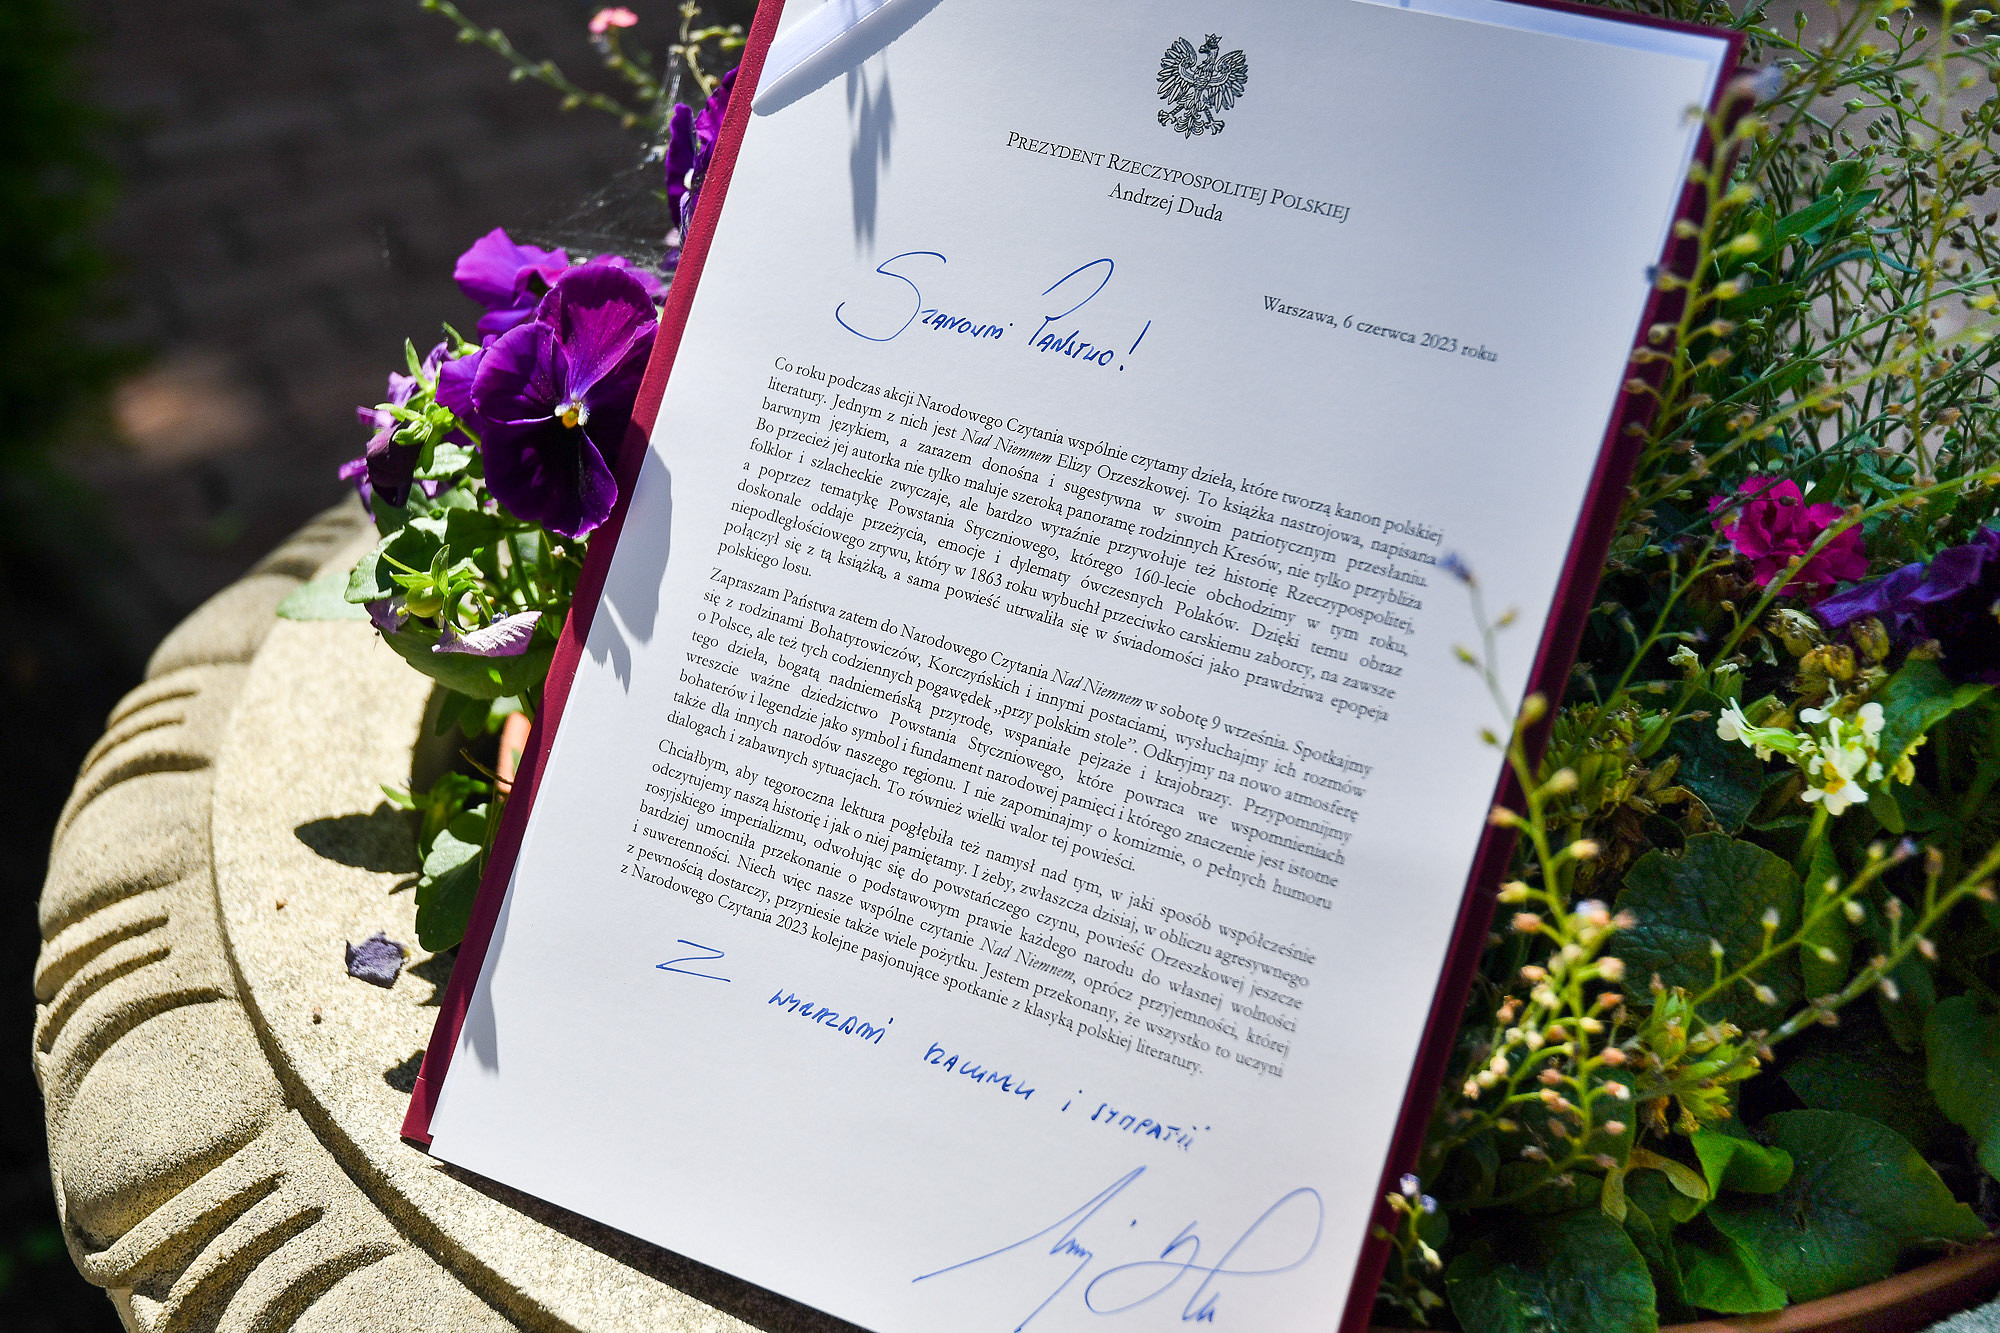 Prezydent RP Andrzej Duda skierował okolicznościowy list, zachęcając do wspólnej lektury. Fot. prezydent.pl